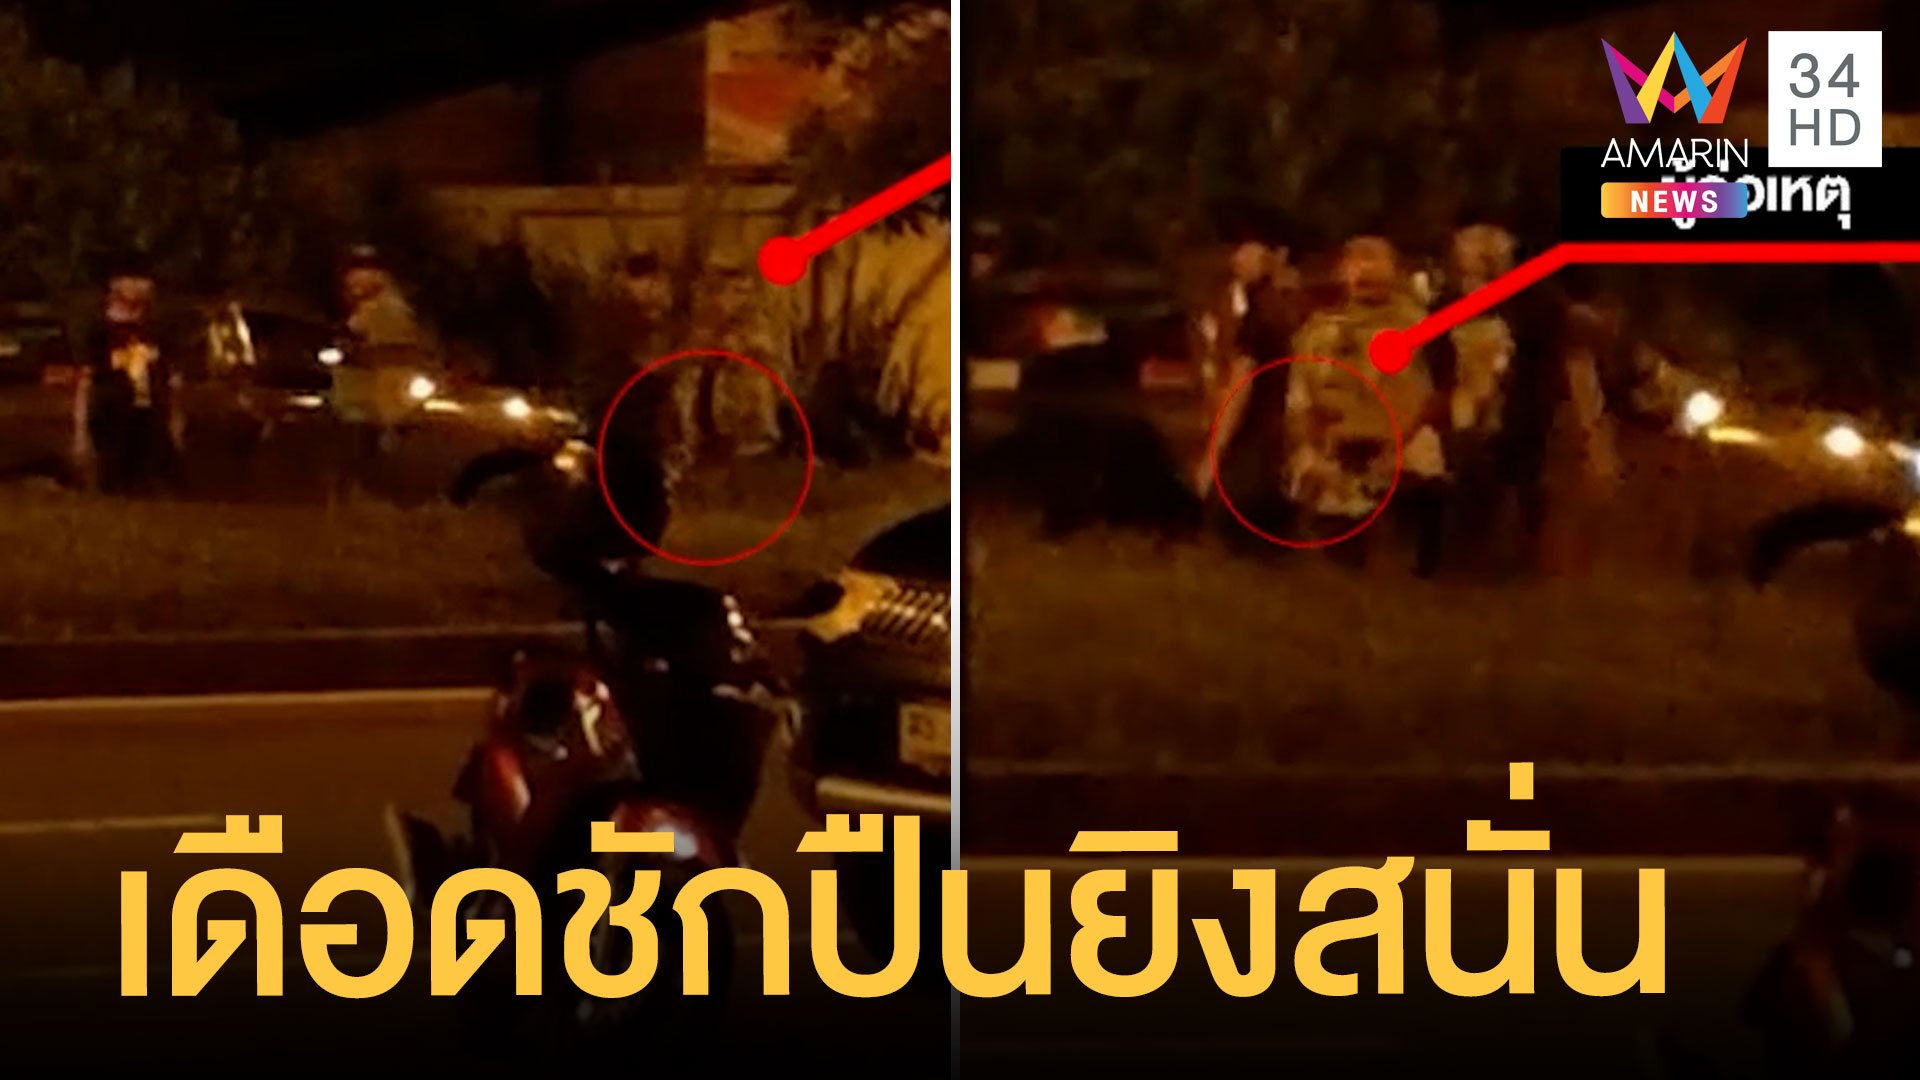 หนุ่มอ้างแฟนถูกจับก้น ชักปืนยิงสนั่นหน้าร้านเหล้า | ข่าวเที่ยงอมรินทร์ | 19 มิ.ย. 65 | AMARIN TVHD34